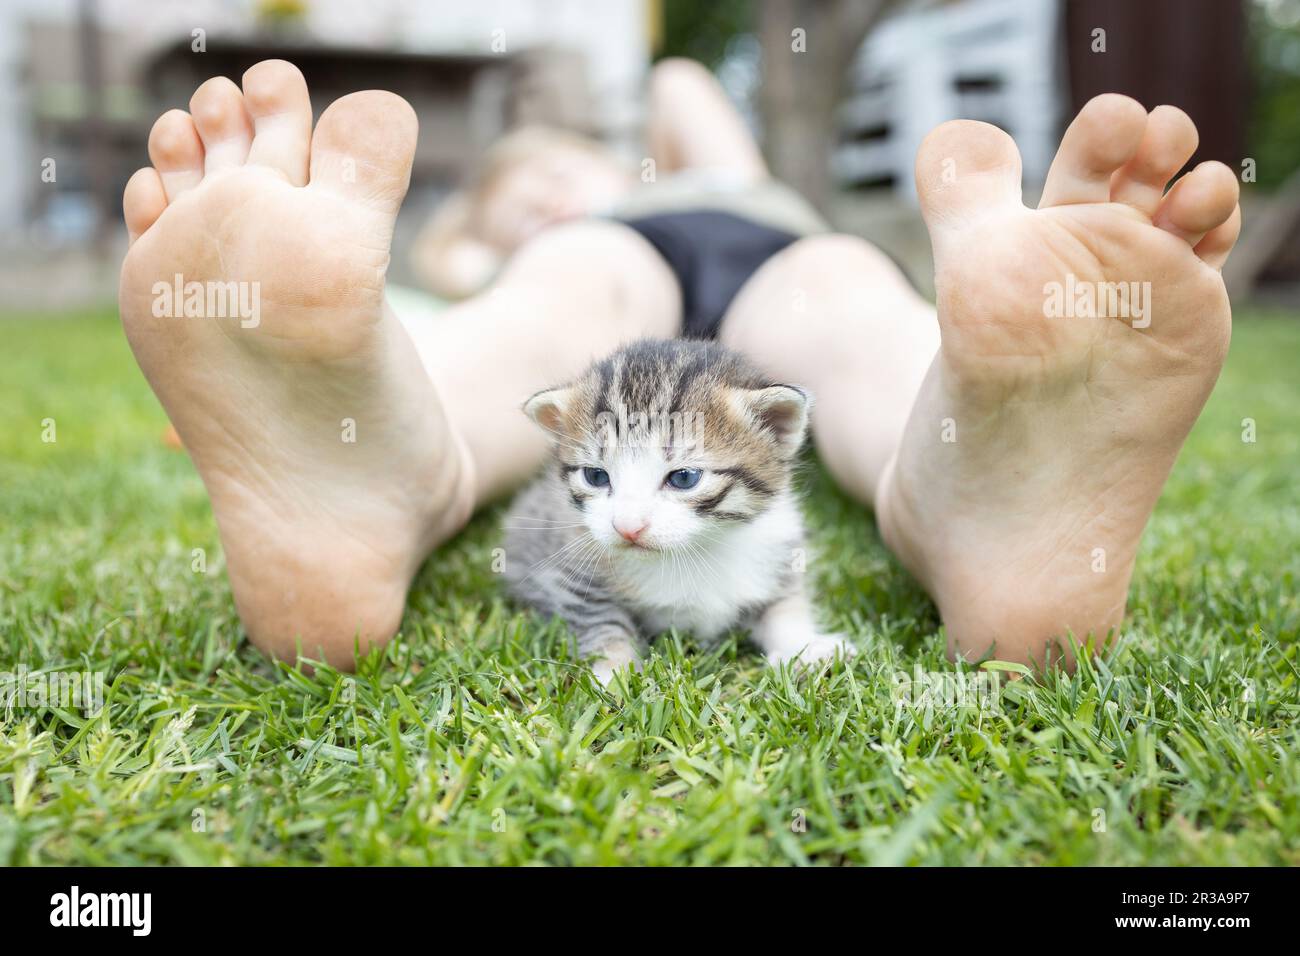 il piccolo gattino carino si siede tra i piedi nudi del bambino sul prato in una calda giornata estiva. Divertente foto di amicizia tra un bambino e un animale domestico. Bambino felice Foto Stock